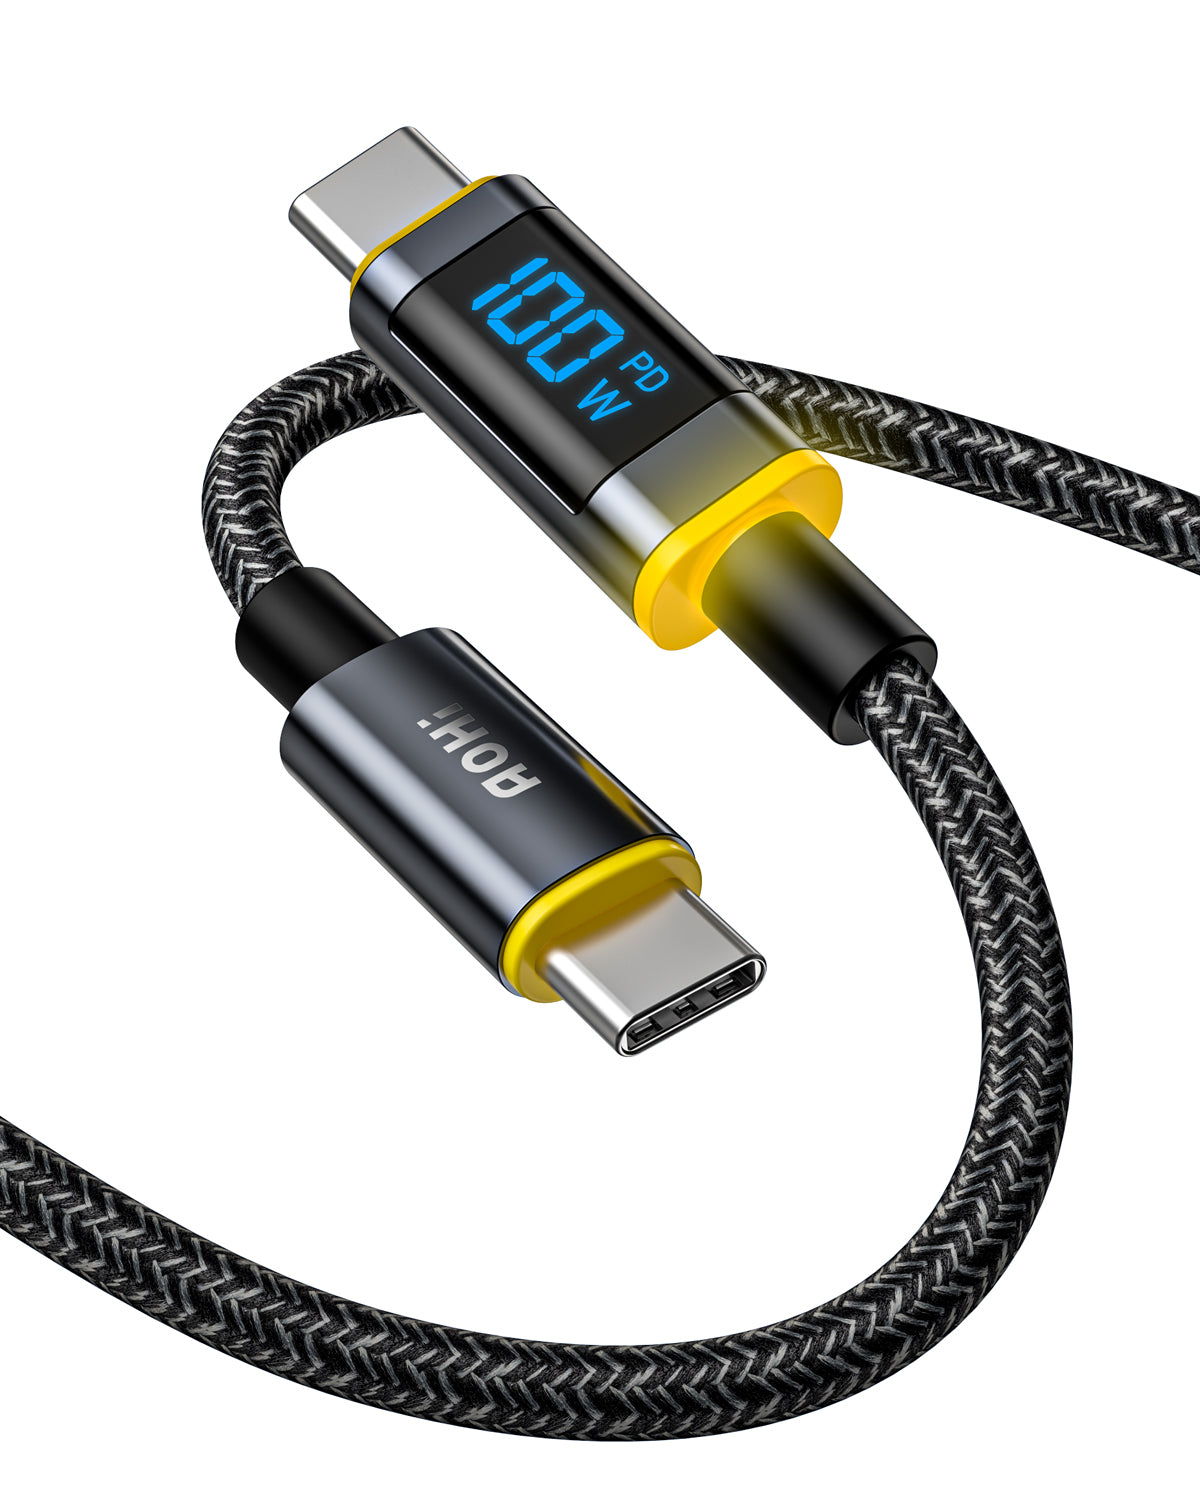 Bekostning fordøje job AOHI Magline+ Nylon USB C to USB C LED Digital Display Cable 4ft